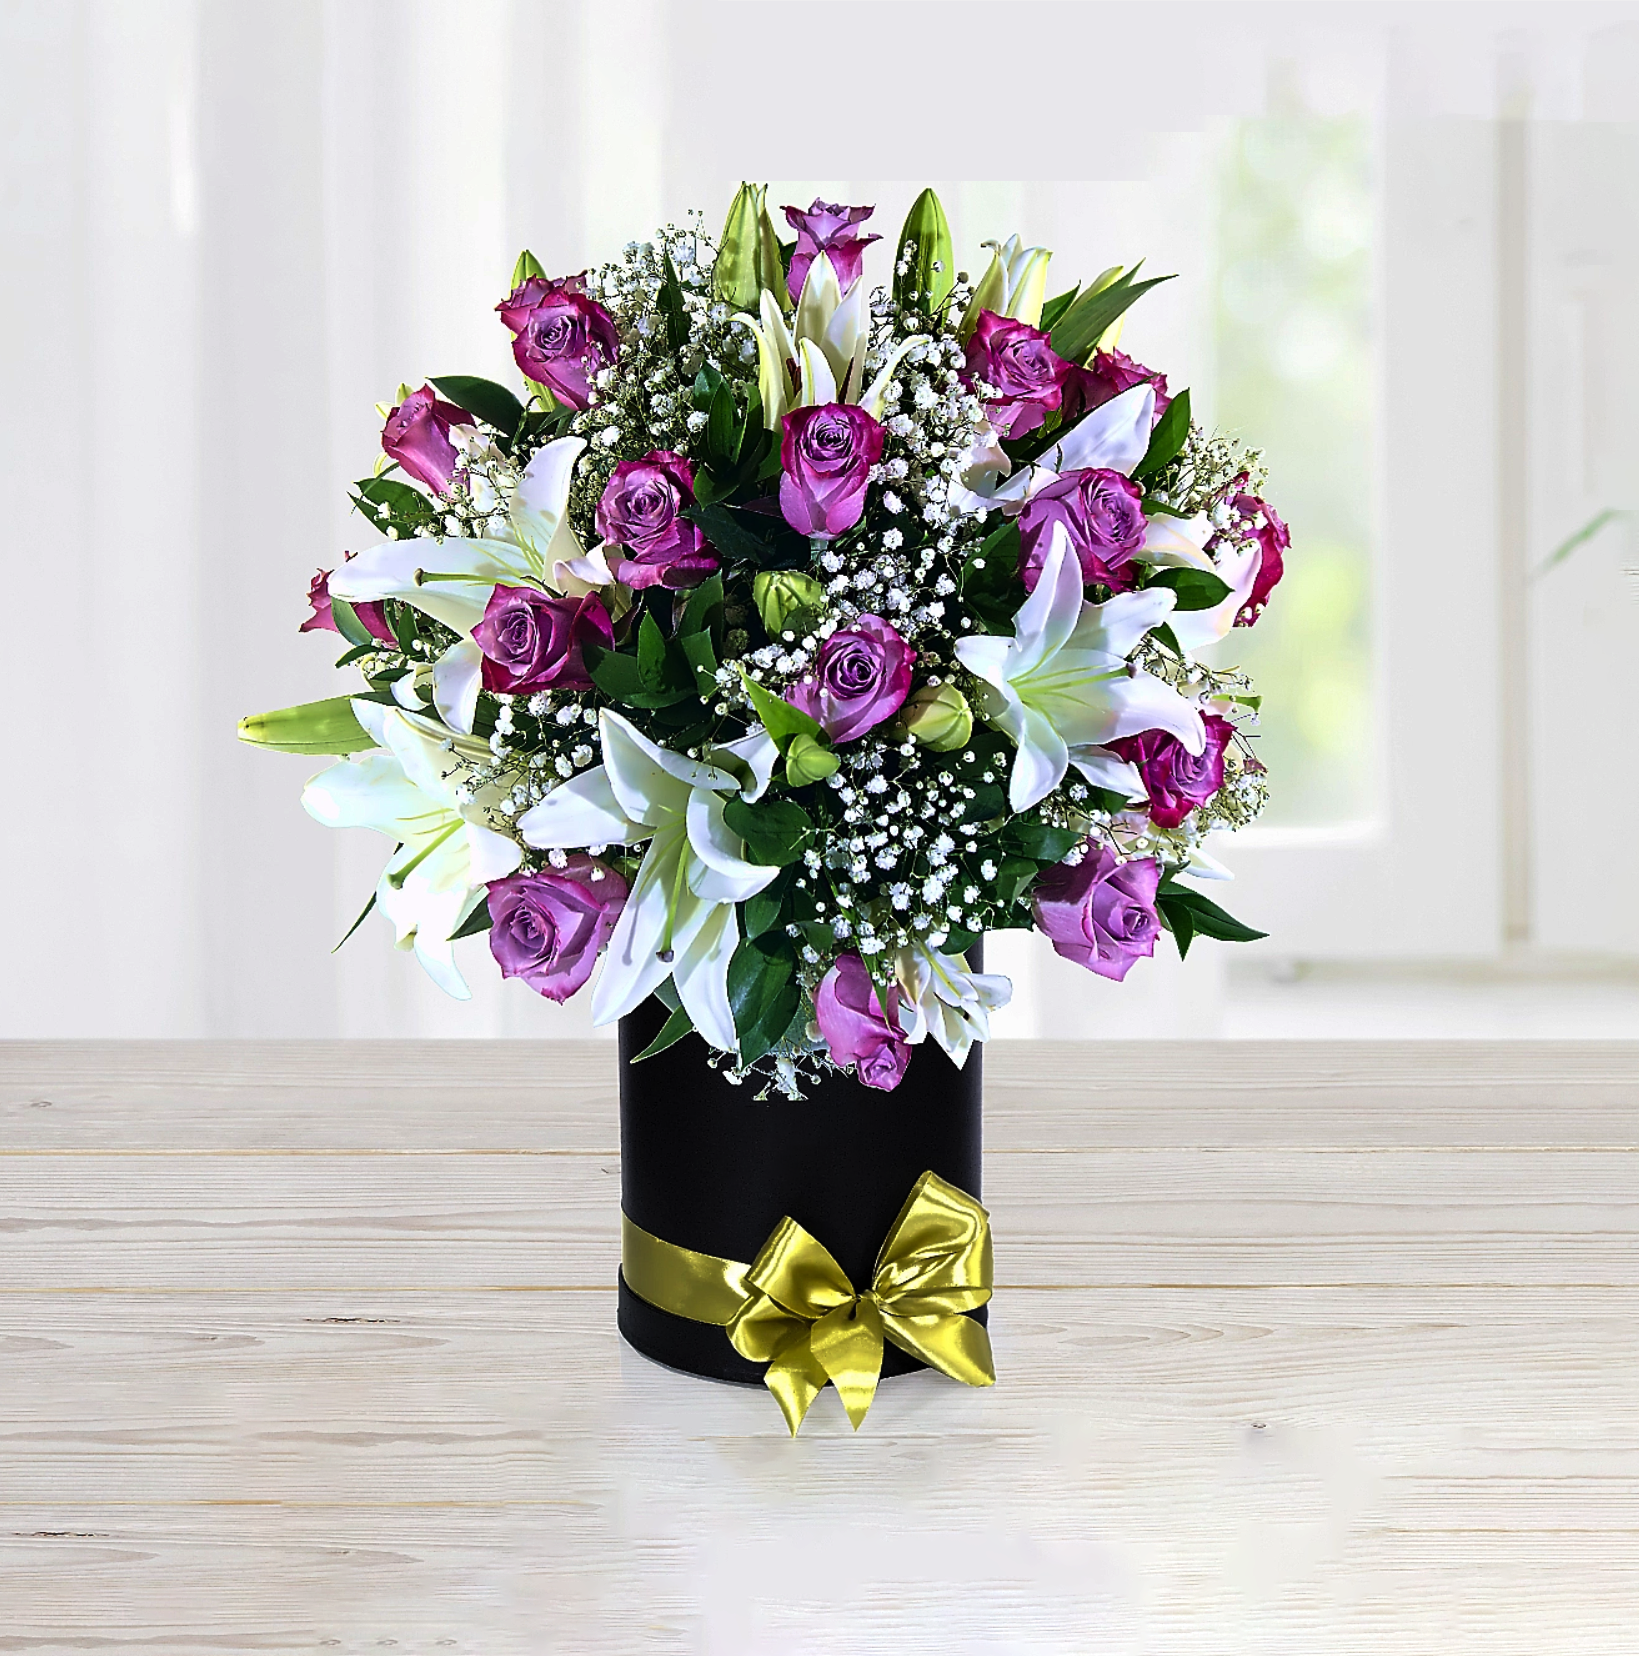 Un regalo de lilium blanco y rosas lilas muy bonito con el que sorprenderás  | Florería Envía Flores Cusco